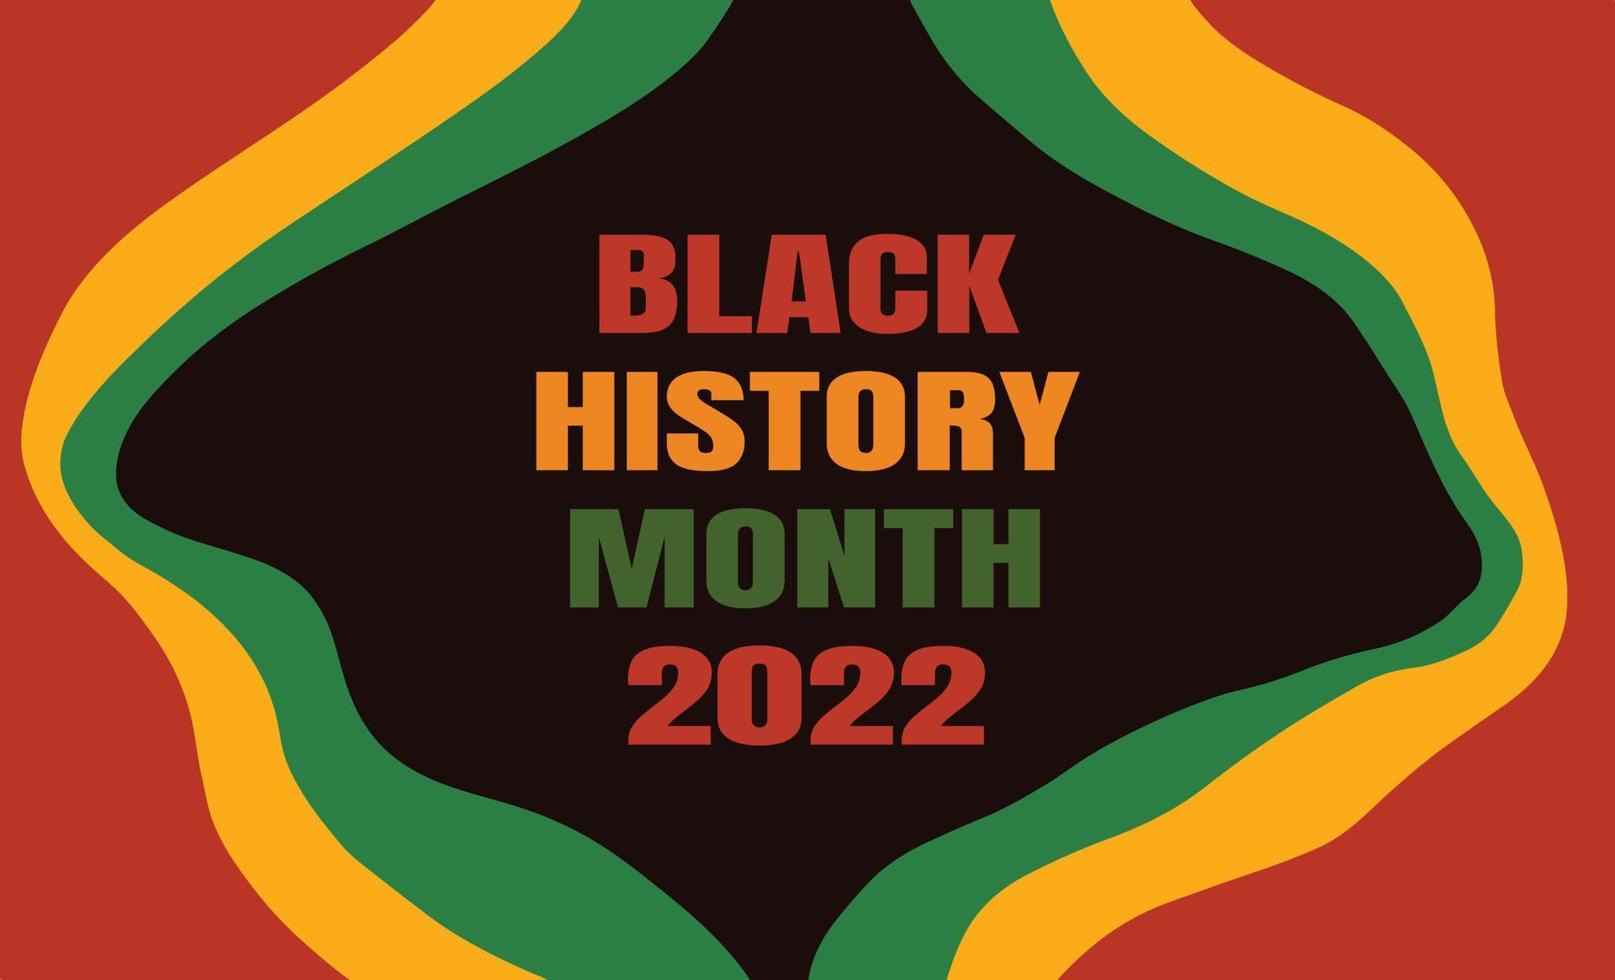 Lịch sử da đen: Không thể bỏ lỡ cơ hội tìm hiểu về lịch sử da đen - một phần không thể thiếu trong quá trình hình thành và phát triển của nhân loại. Từ vượt qua những khó khăn đến đánh bại những thành công, những câu chuyện đầy cảm hứng này sẽ làm cho bạn trầm trồ và suy ngẫm.